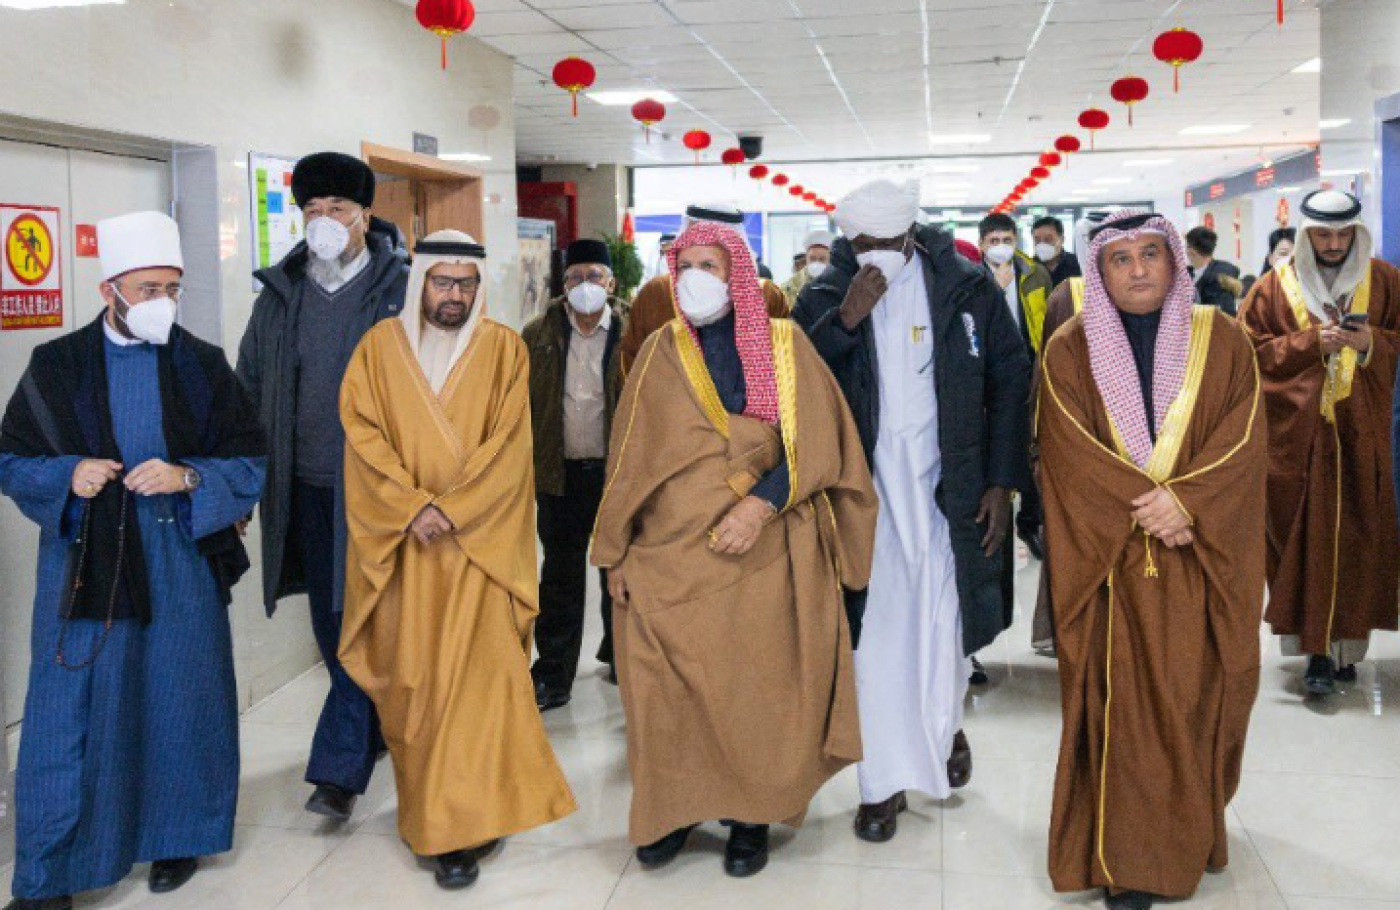 De Emirati academicus Ali Rashid al Nuaimi bezoekt samen met andere islamitische geleerden van de World Muslim Communities Council een centrum tegen terrorisme in de provincie Xinjiang (screengrab).